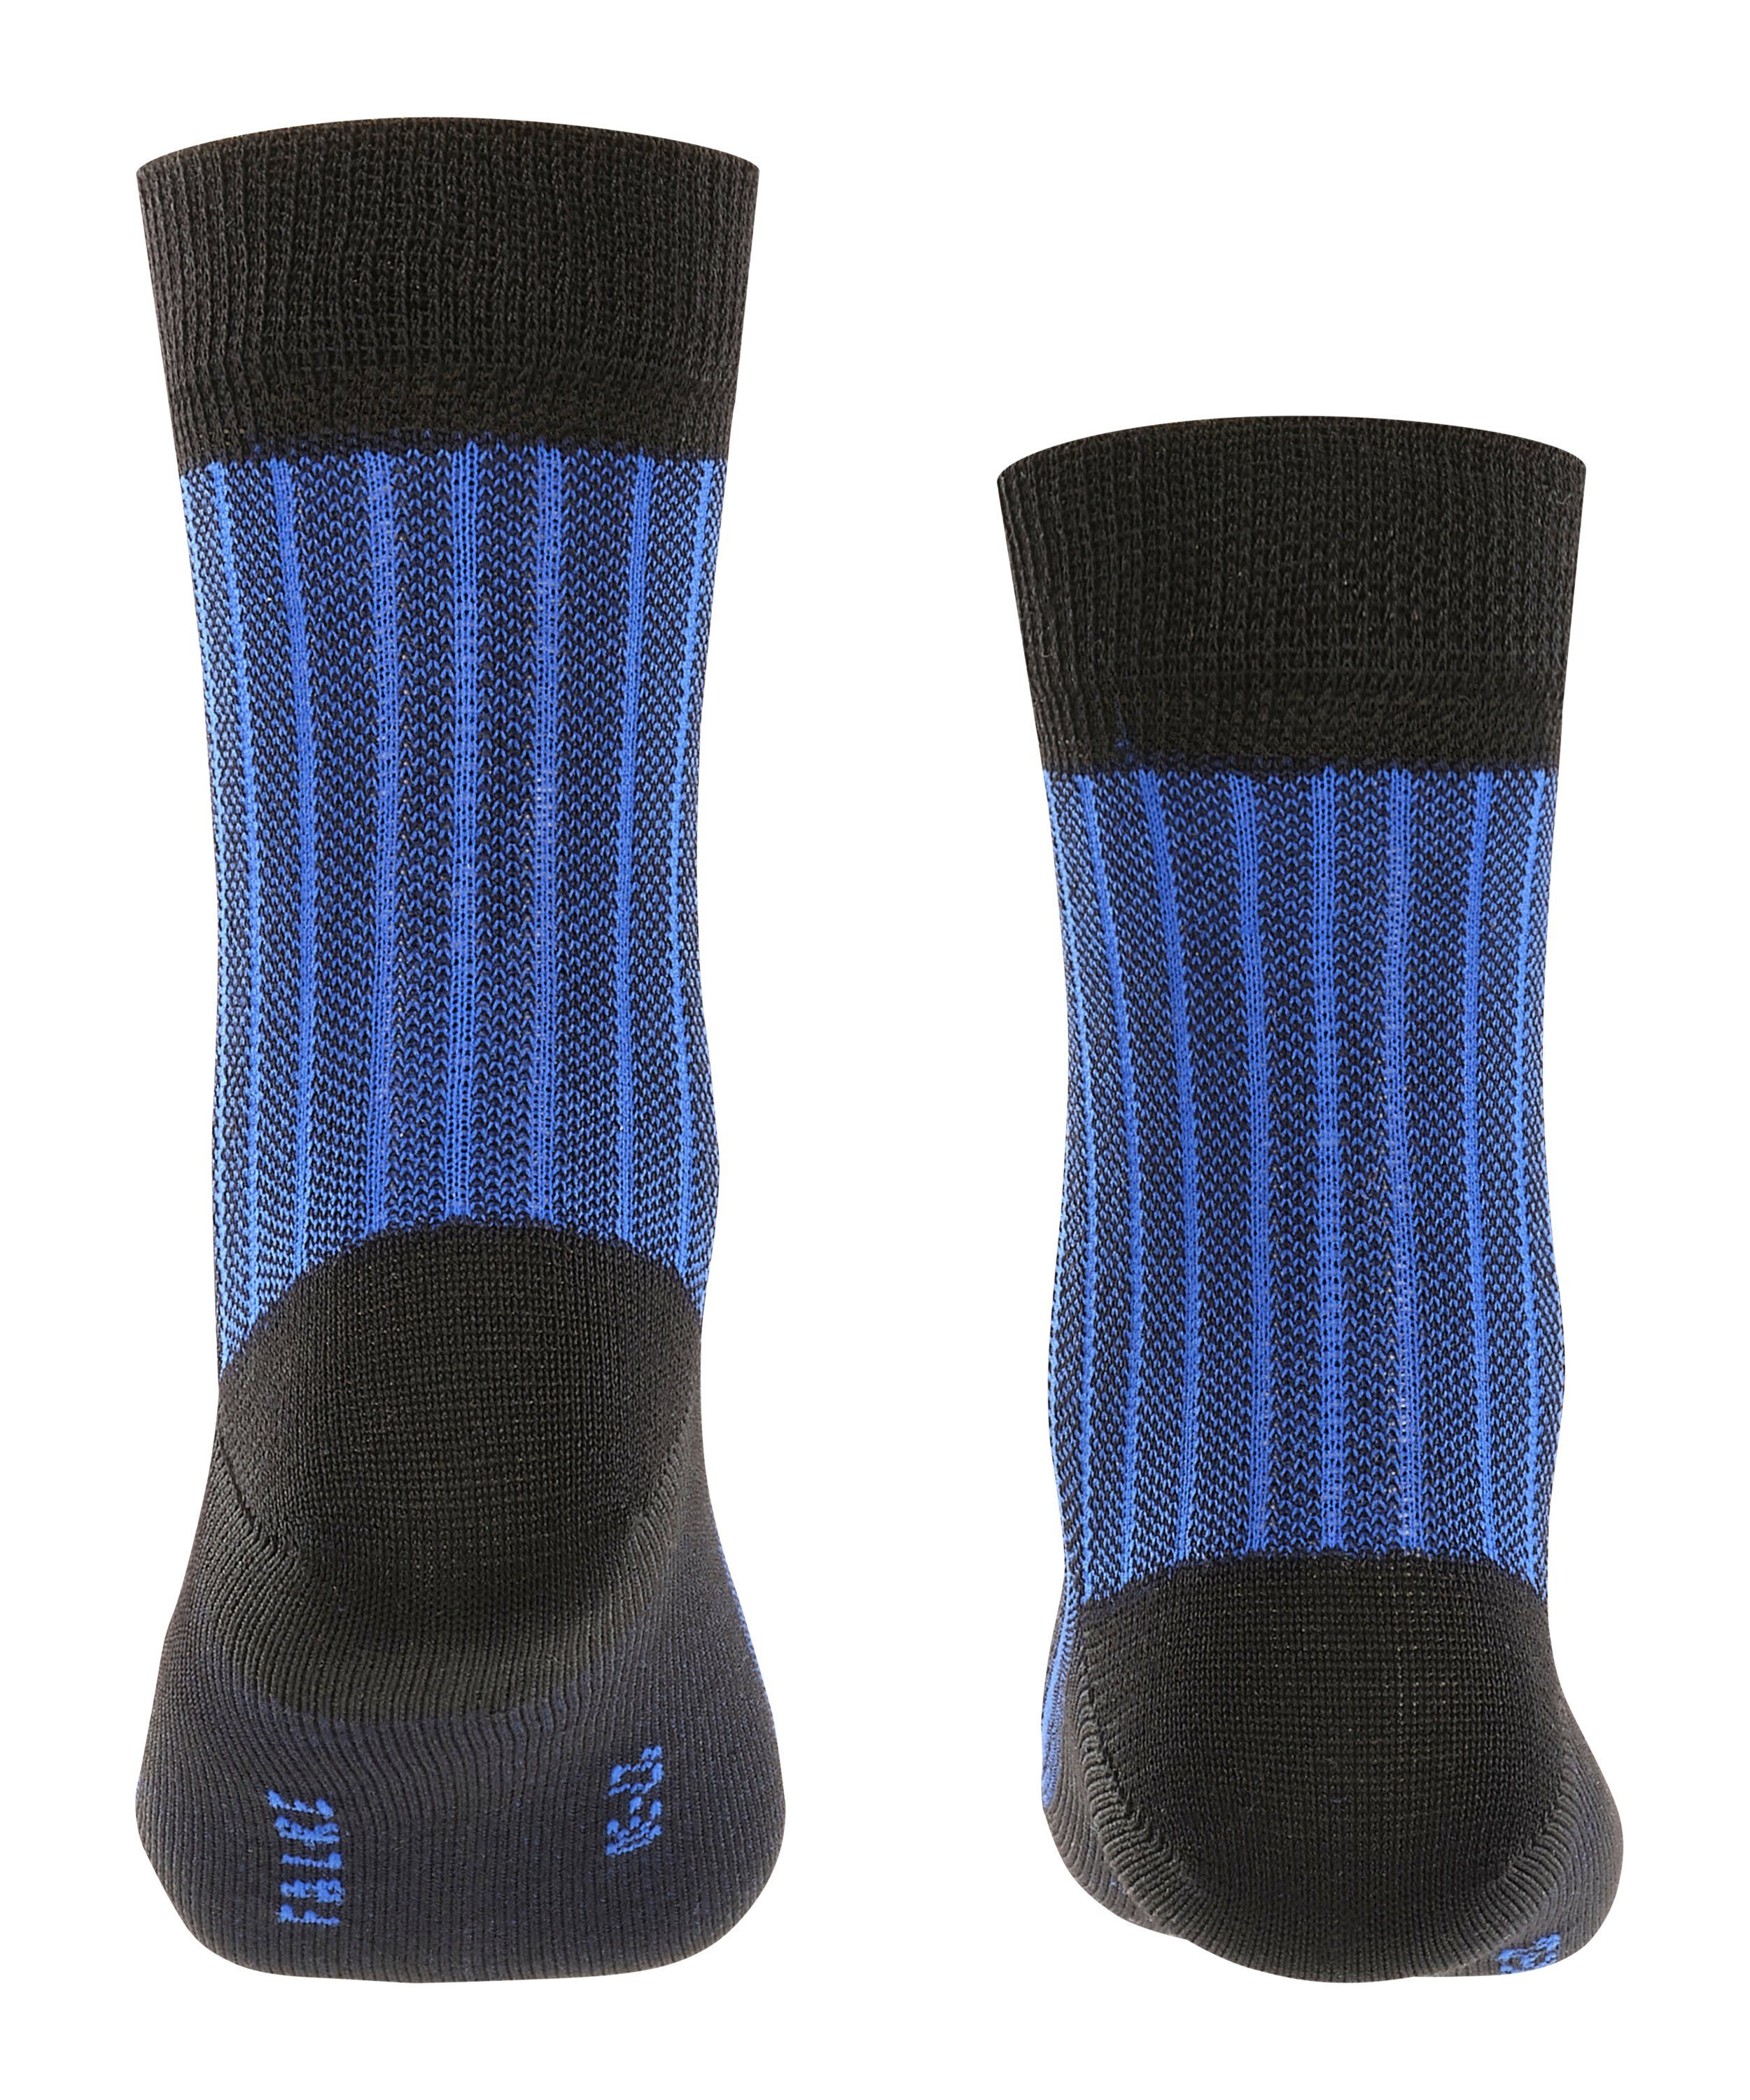 Wäsche/Bademode Socken FALKE Socken Oxford (1-Paar) mit hoher Farbbrillianz